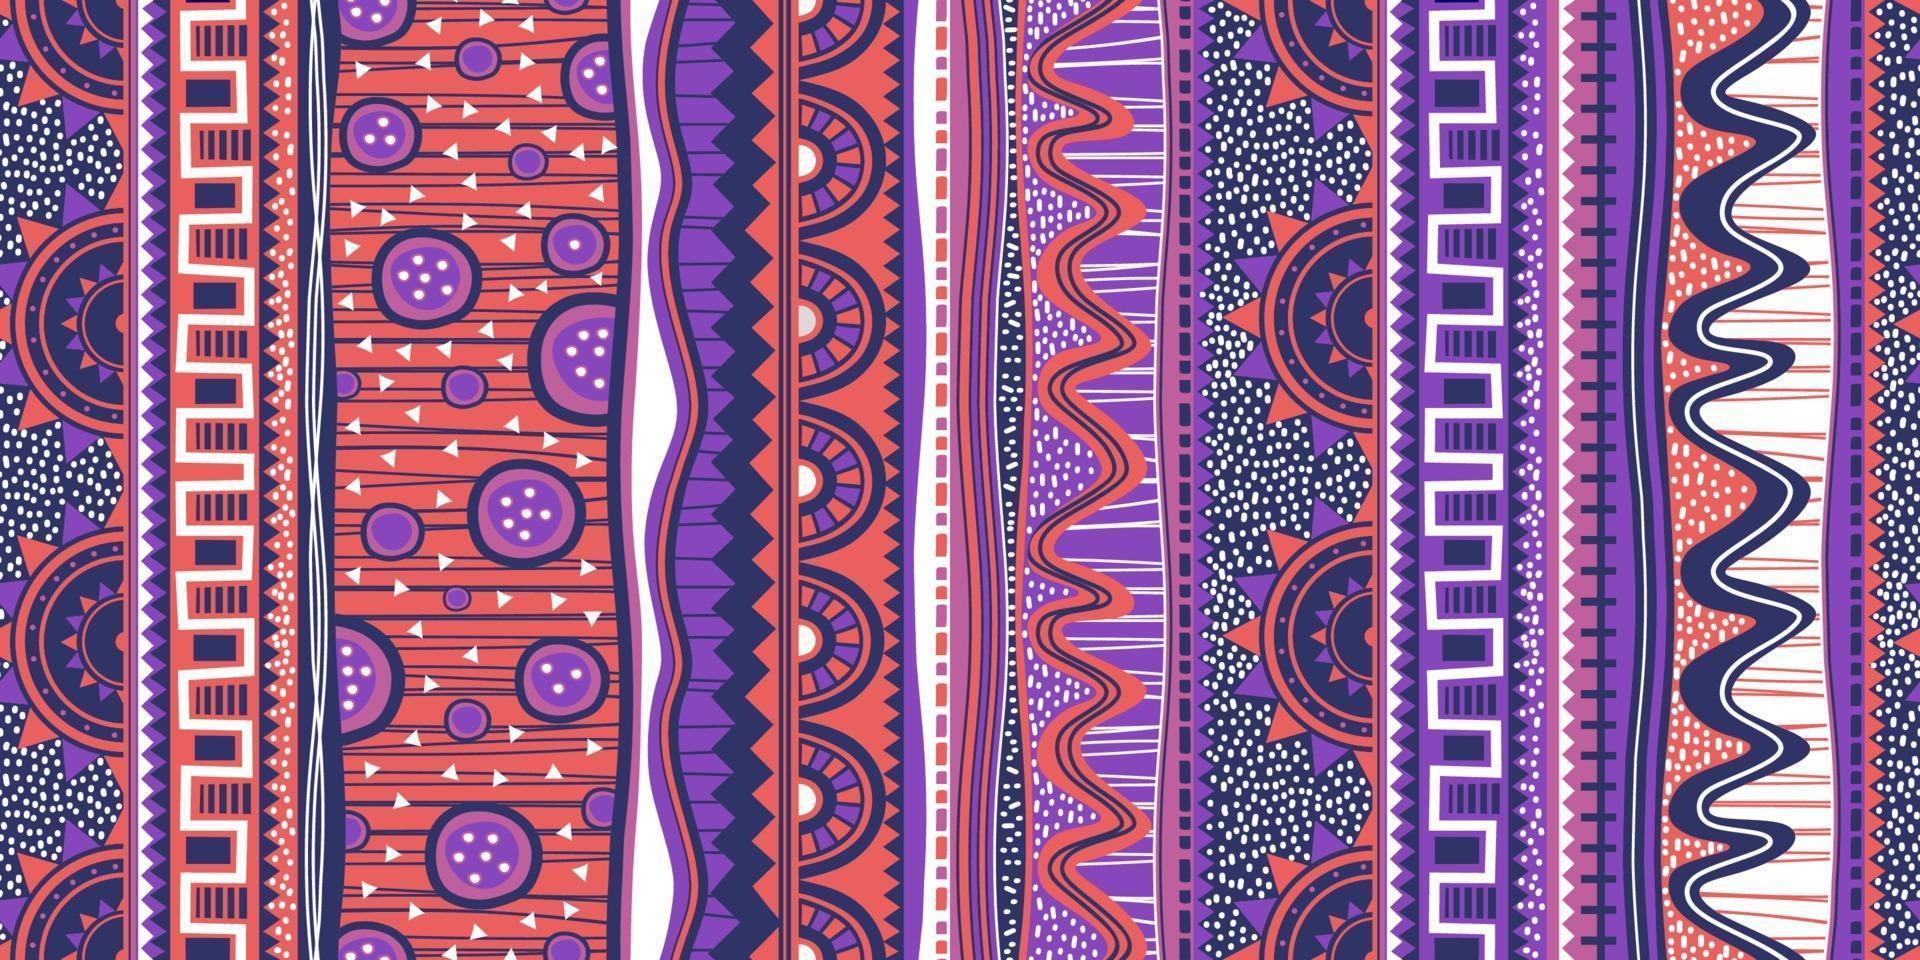 patrón étnico sin fisuras. colorido diseño indio, nativo americano, navajo. motivo mexicano, adorno de motivos aztecas batik, ilustración vectorial listo para imprimir. vector